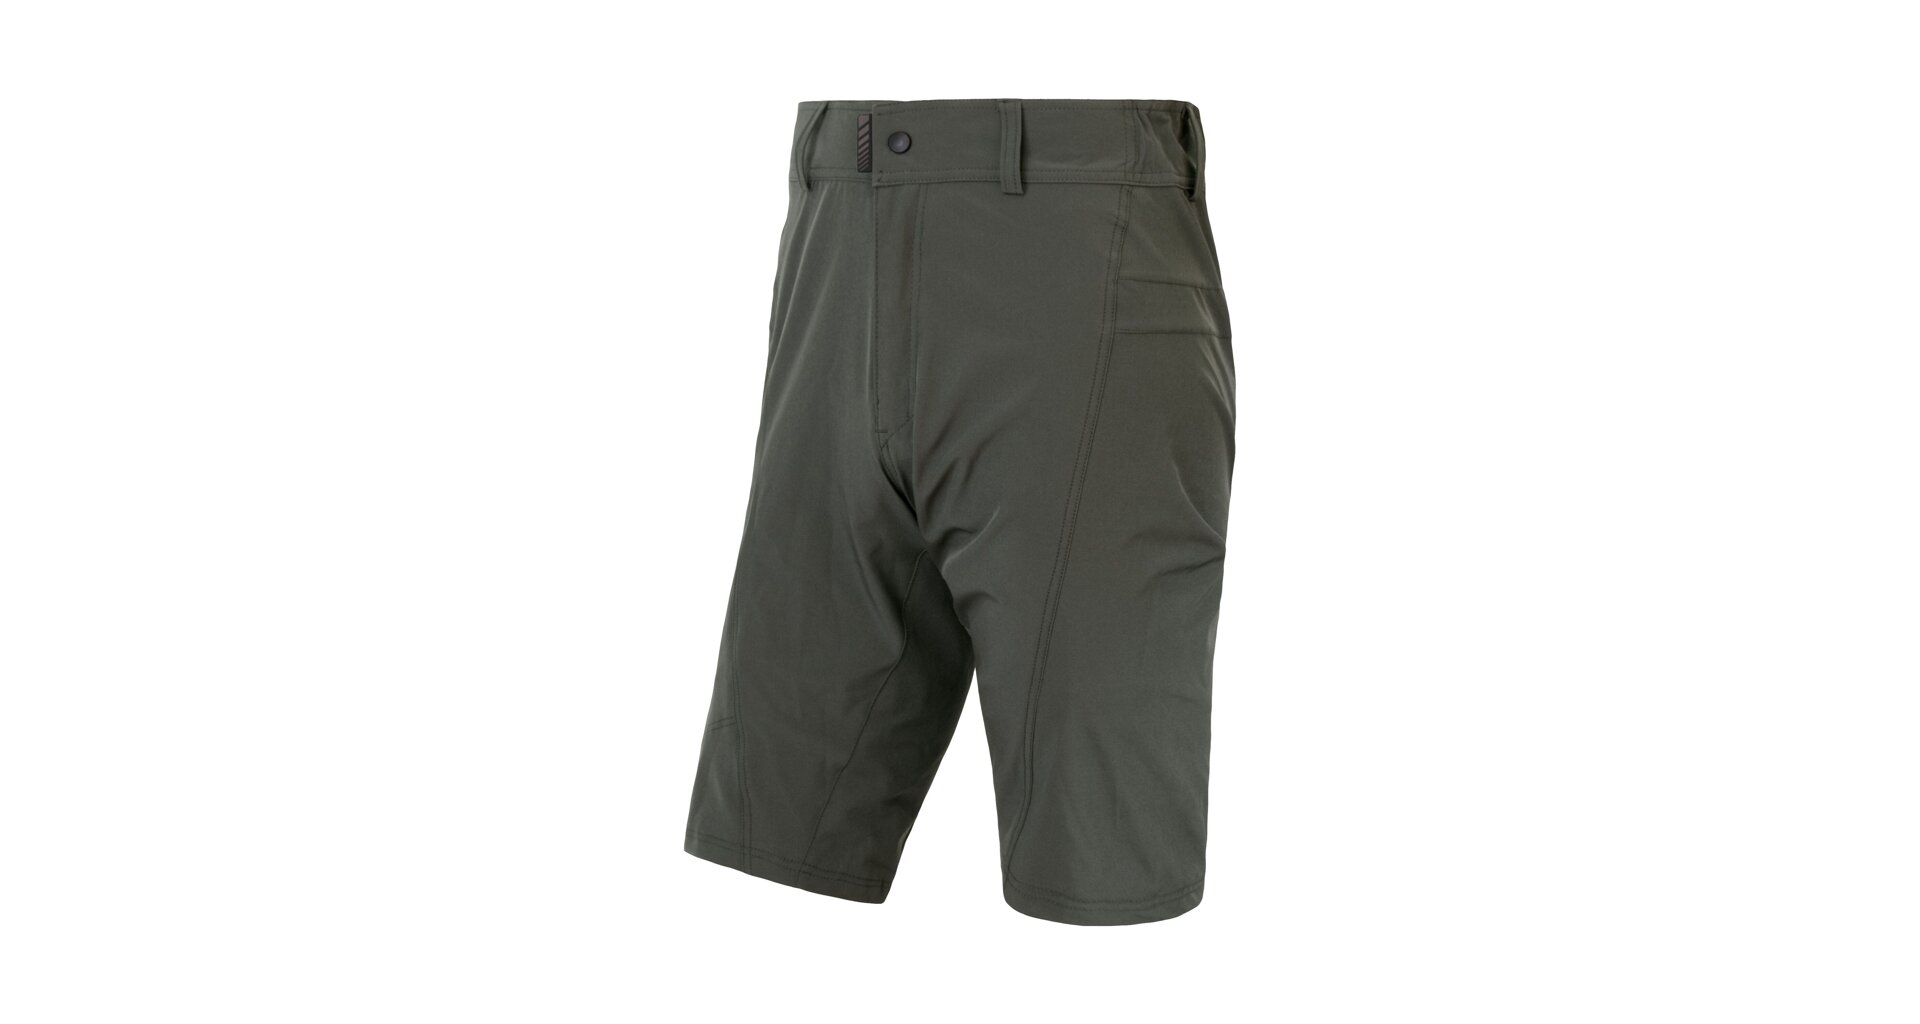 SENSOR HELIUM pánské kalhoty s cyklovložkou krátké volné olive green Velikost: XXL